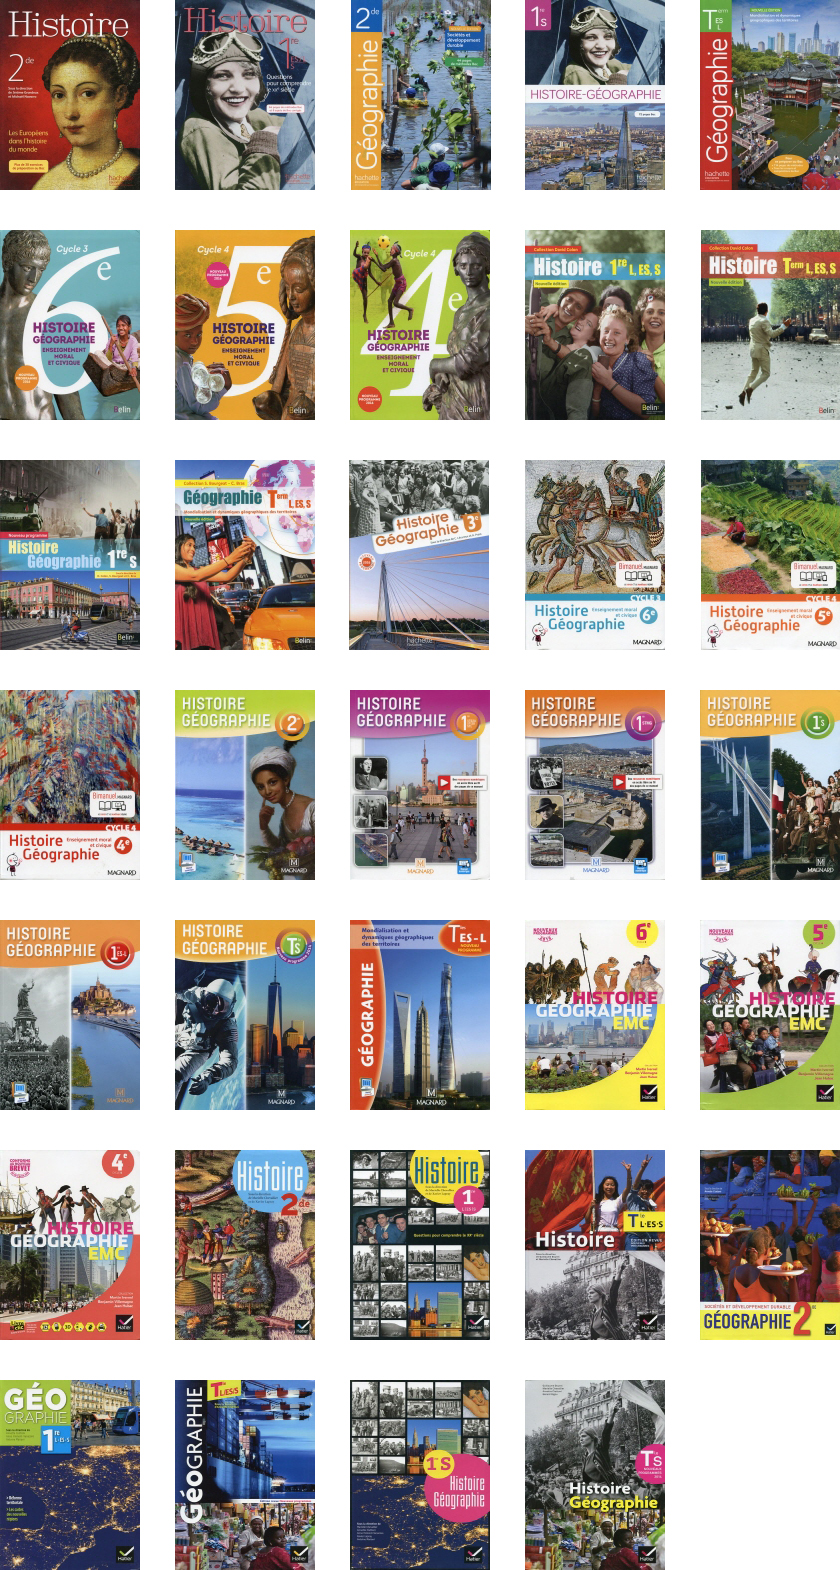 Image - France, 34 Social Textbooks